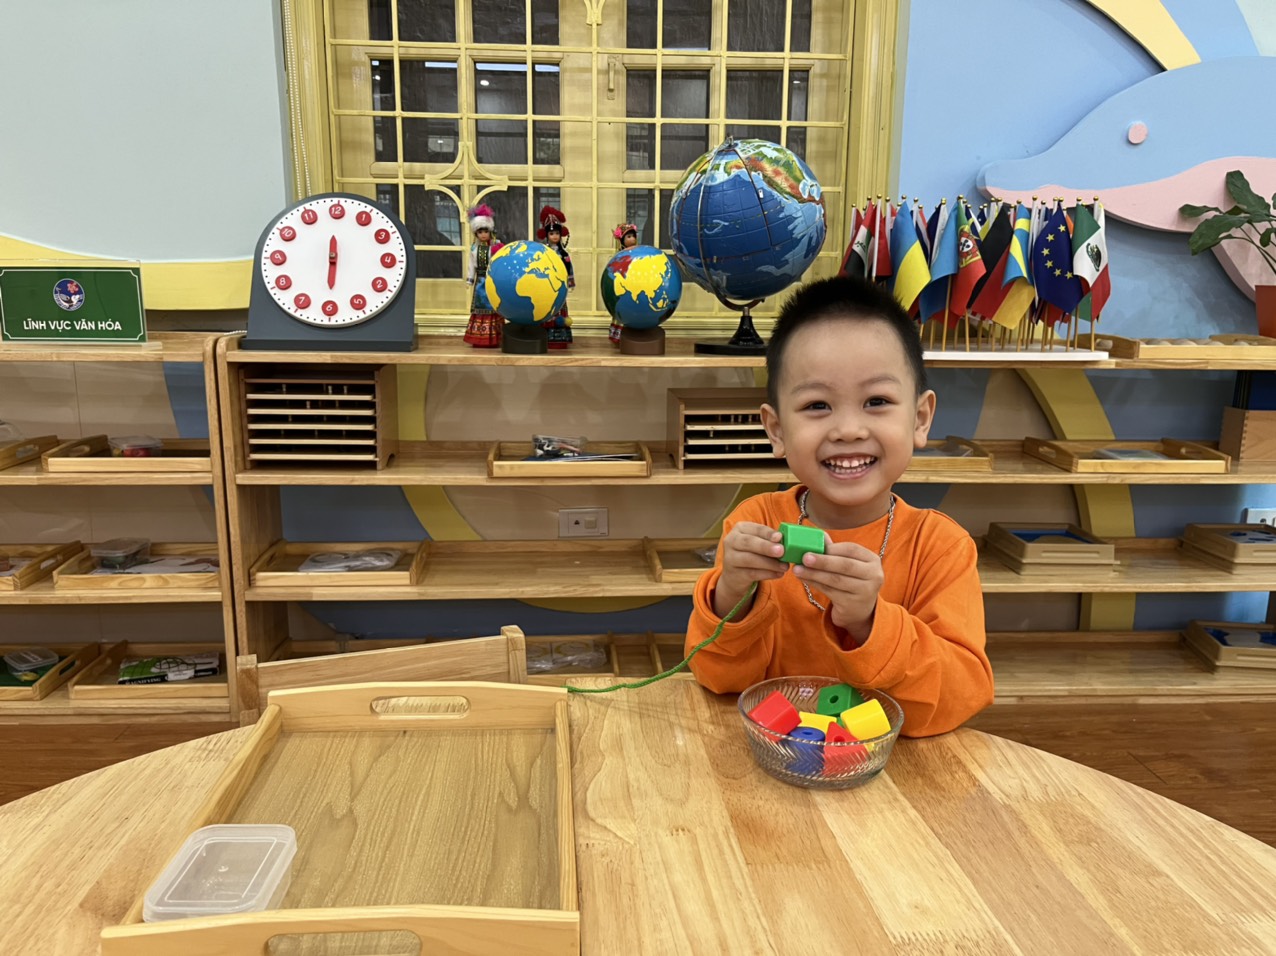 Chương trình Montessori